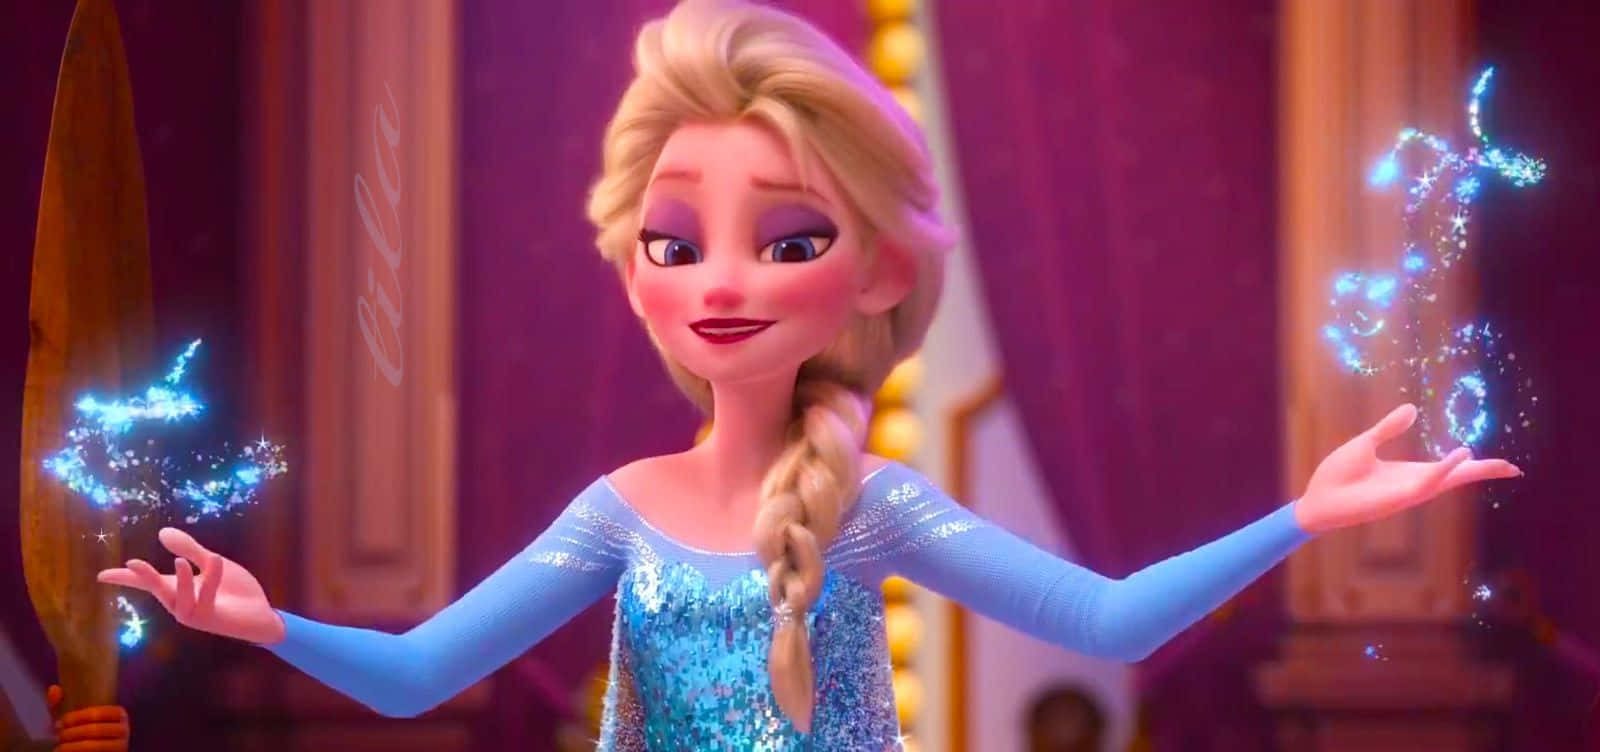 Elsa In Ralph Breaks The Internet Wallpaper